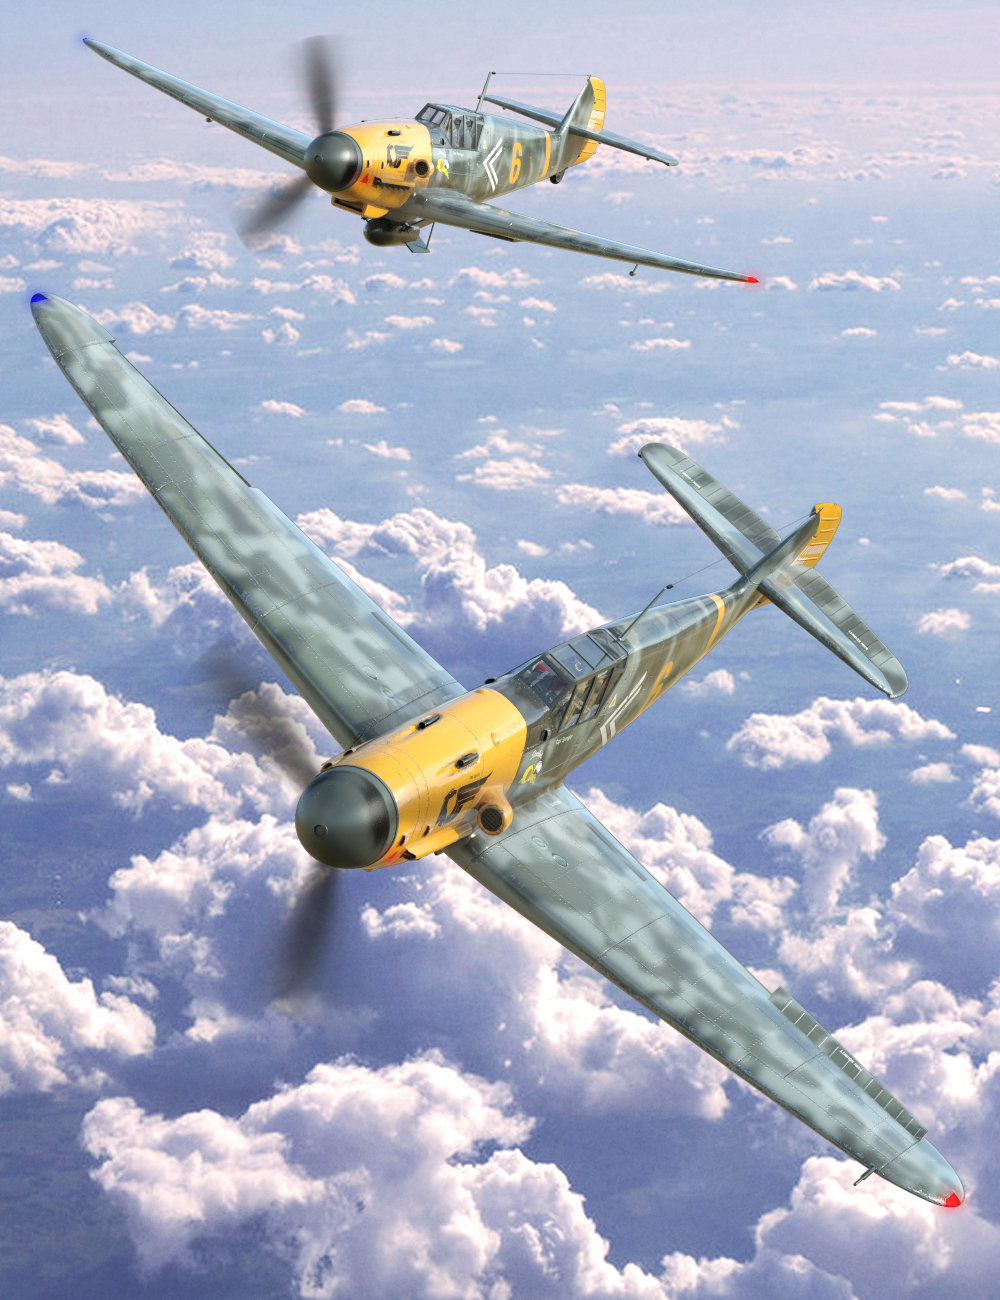 Messer Bf 109 Warplane by: DarkEdgeDesign, 3D Models by Daz 3D